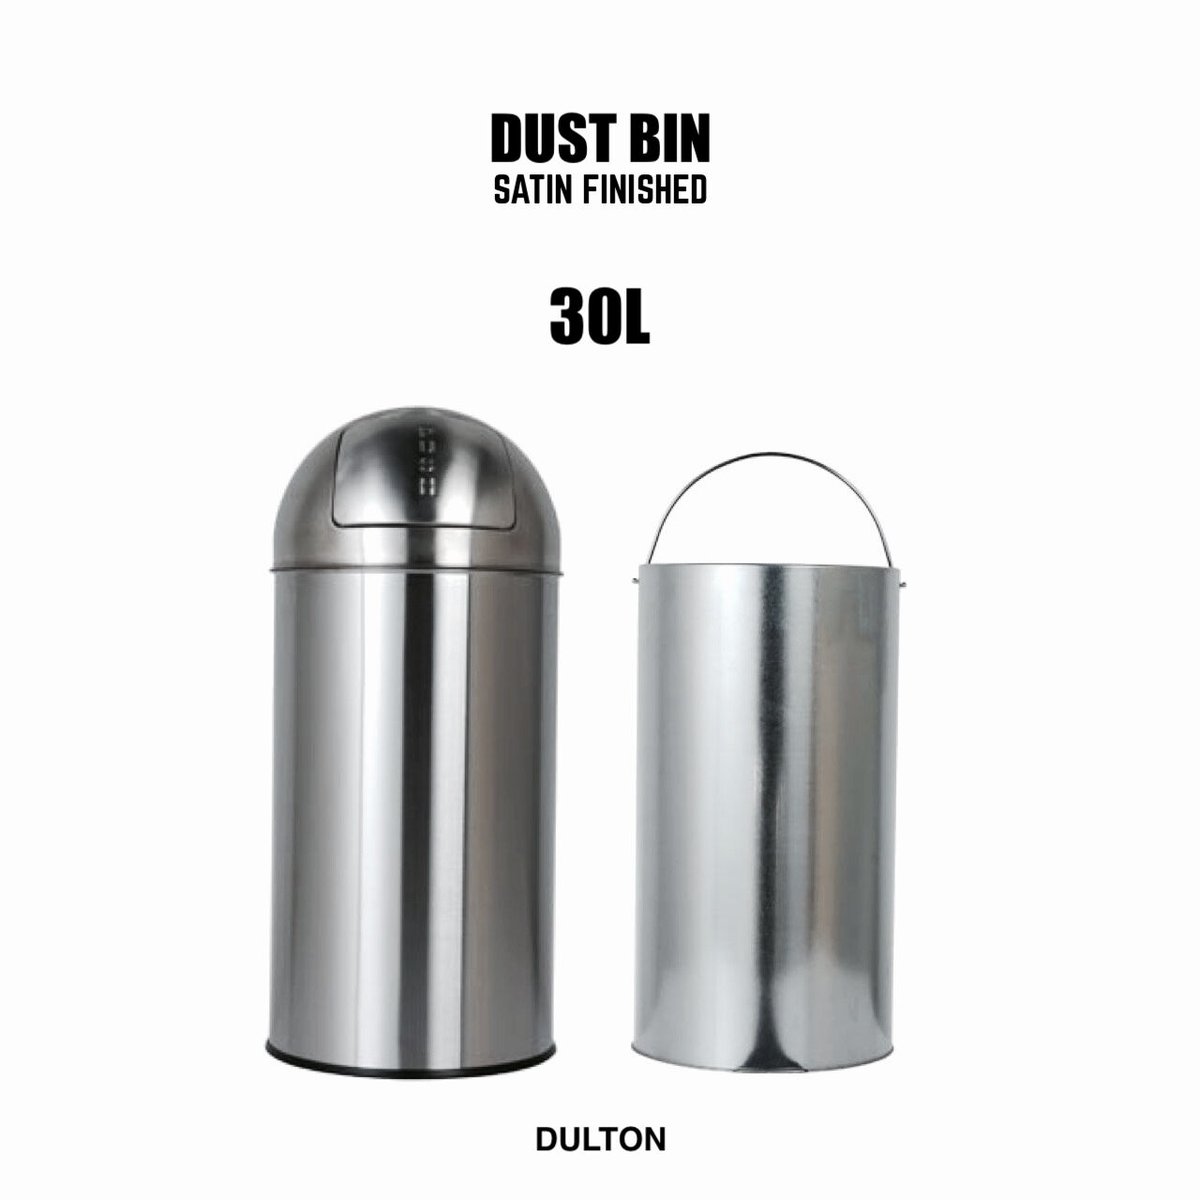 DULTON (ダルトン) ダストビン サテン フィニッシュ 30L DUST BIN SAT...